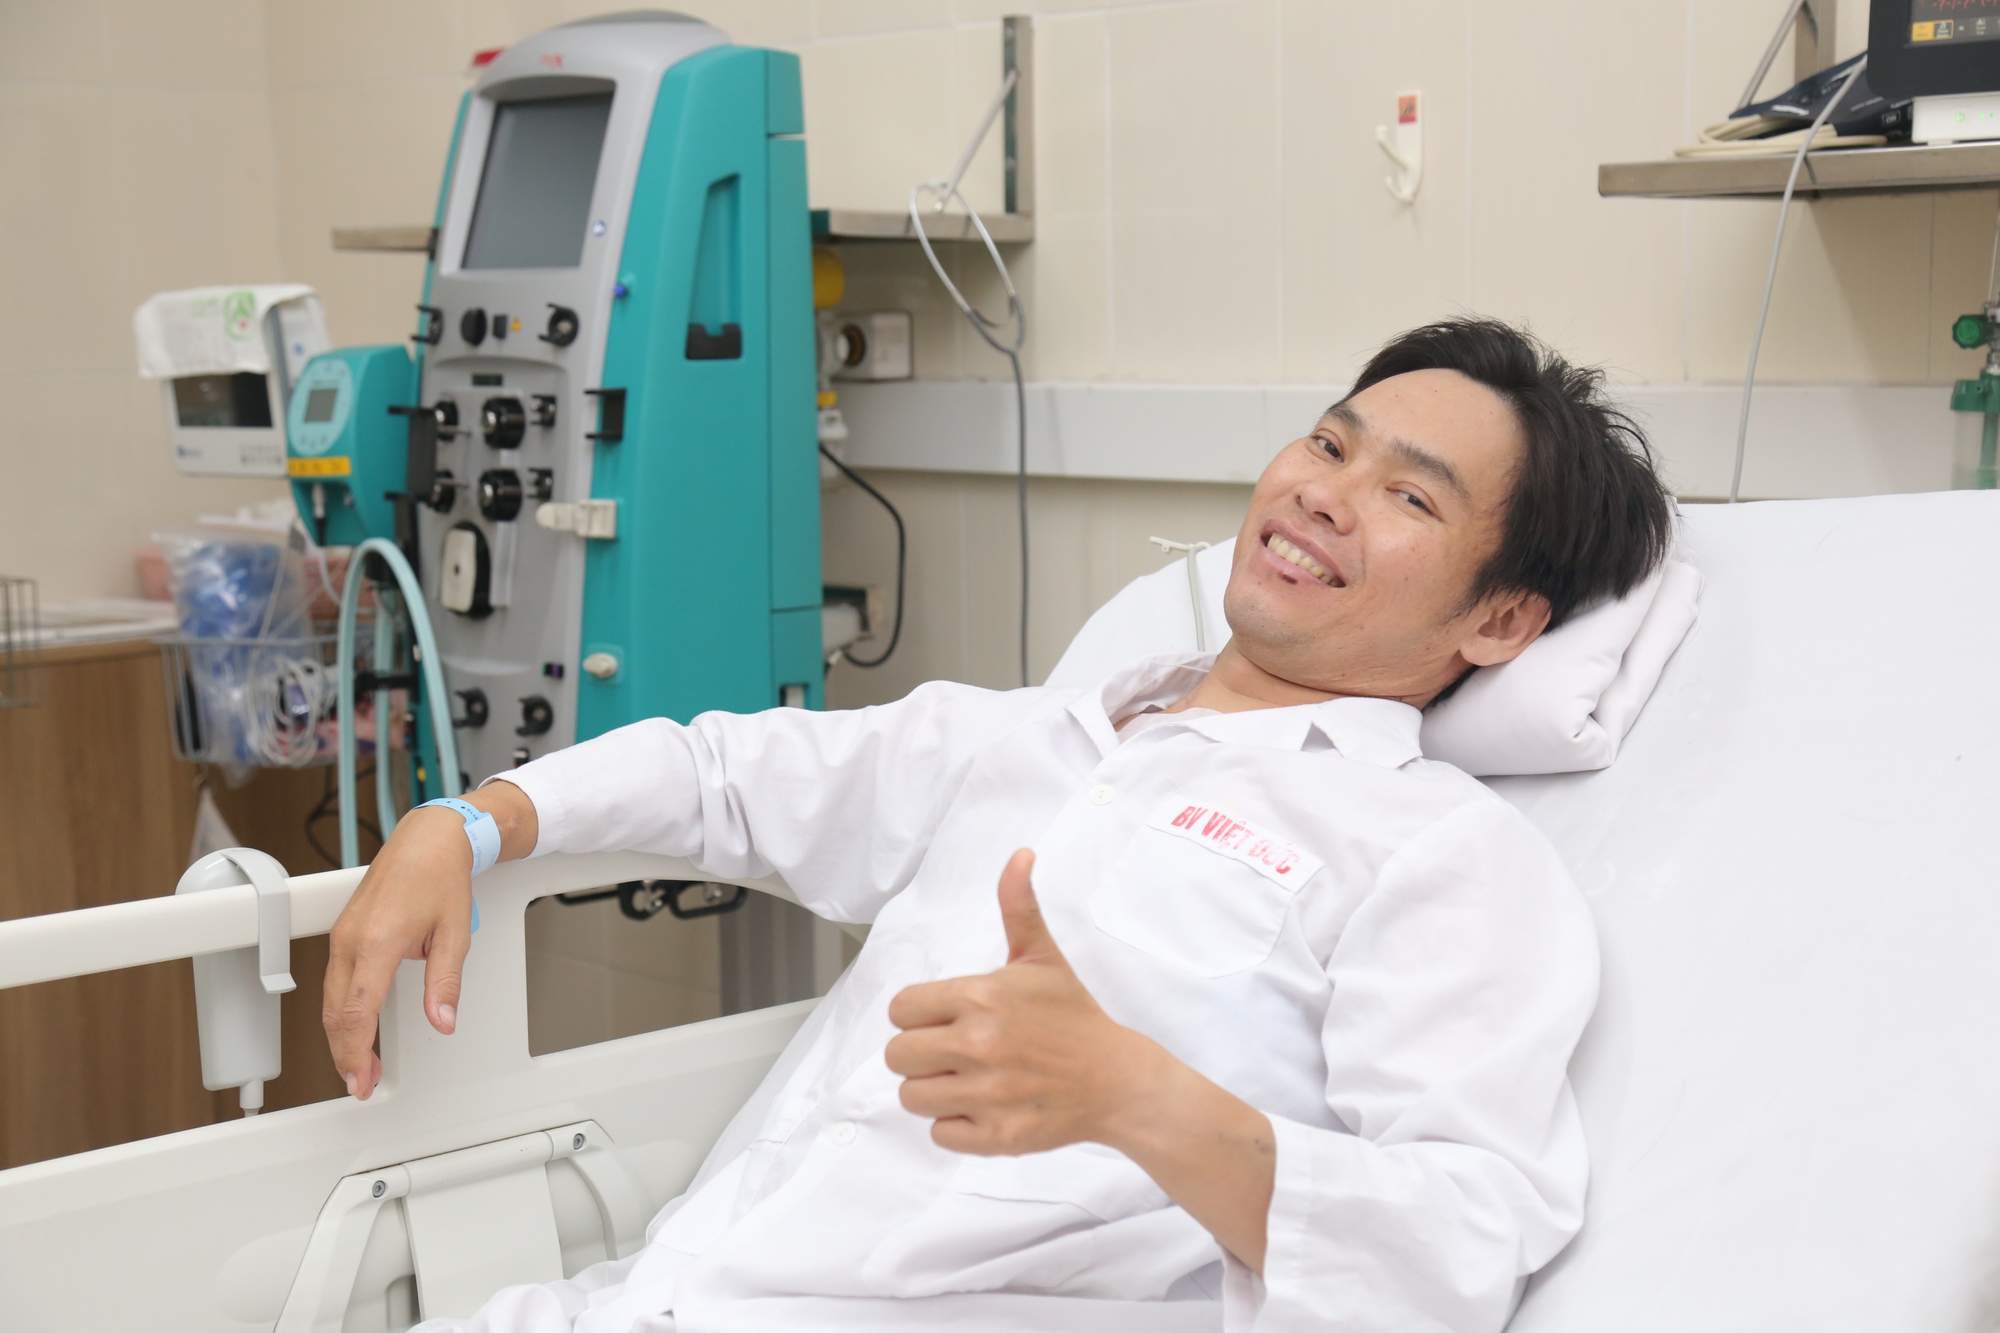 Tin vui của ngành y: Lần đầu ghép đa tạng tim - thận thành công tại Việt Nam - Ảnh 3.